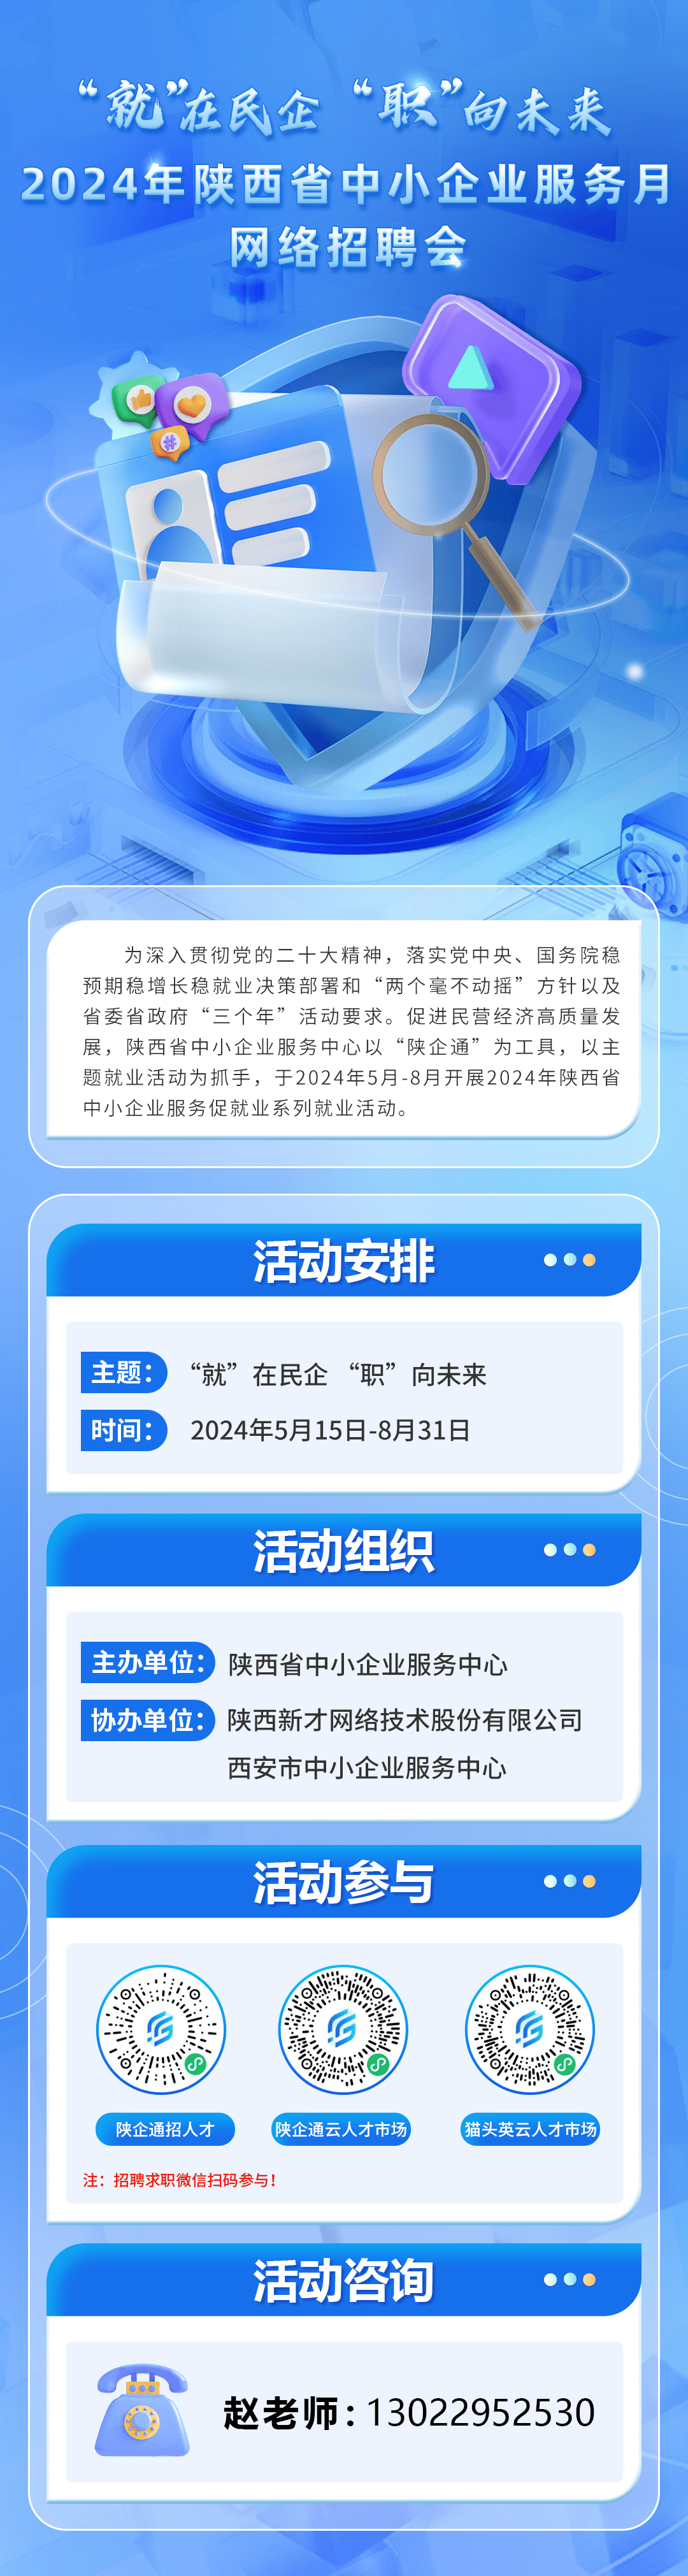 2024年陕西省中小企业服务月网络招聘会活动安排